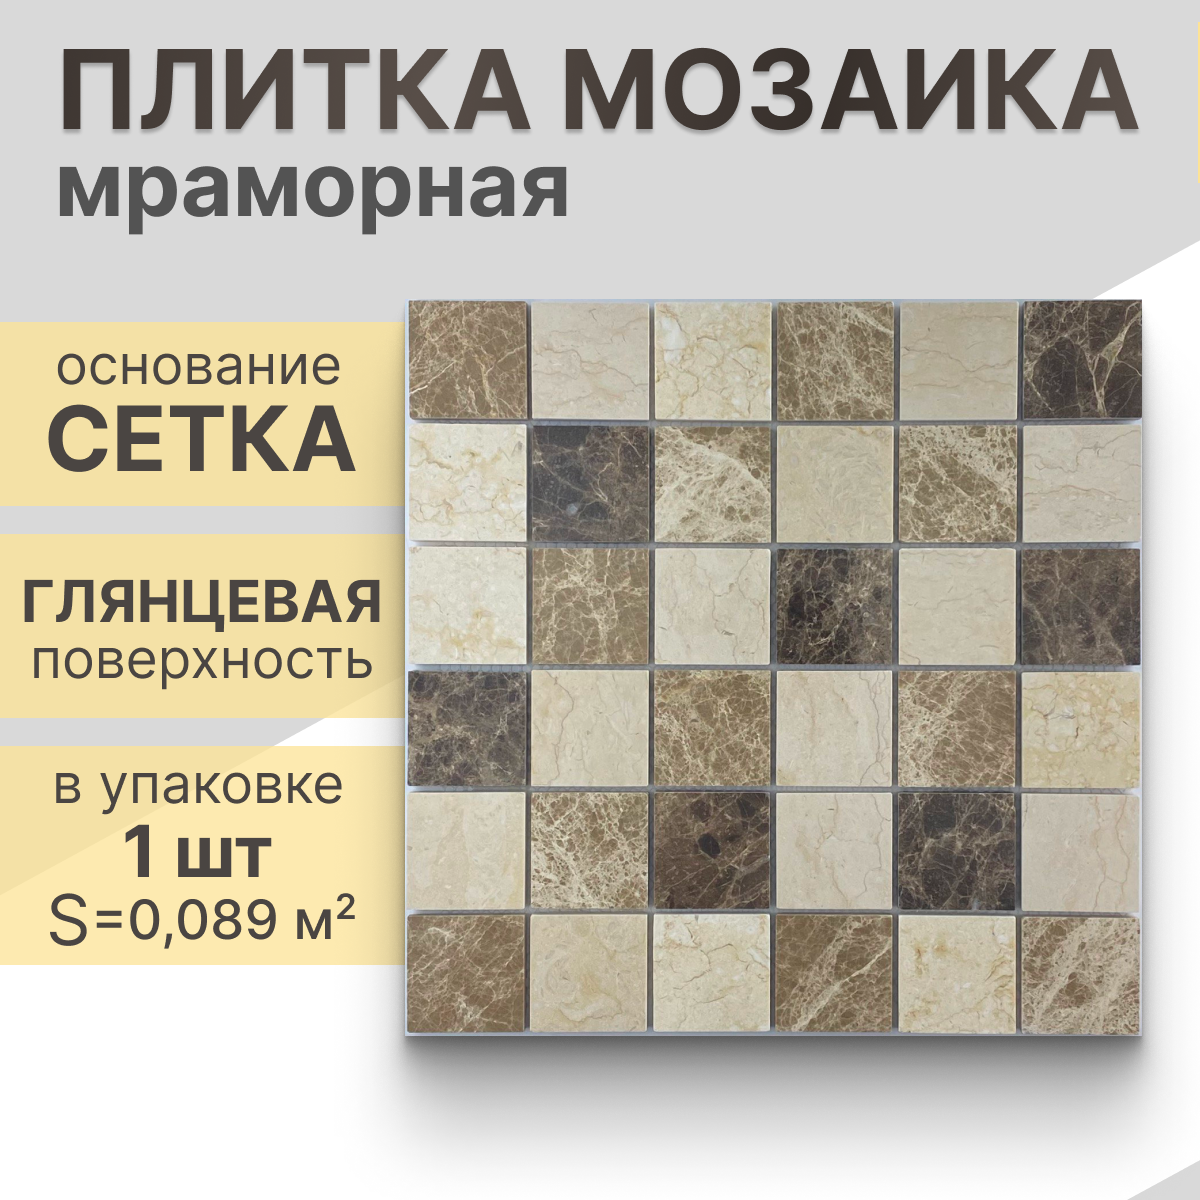 Мозаика (мрамор) NS mosaic Kp-758 29.8X29,8 см 1 шт (0,089 м²)